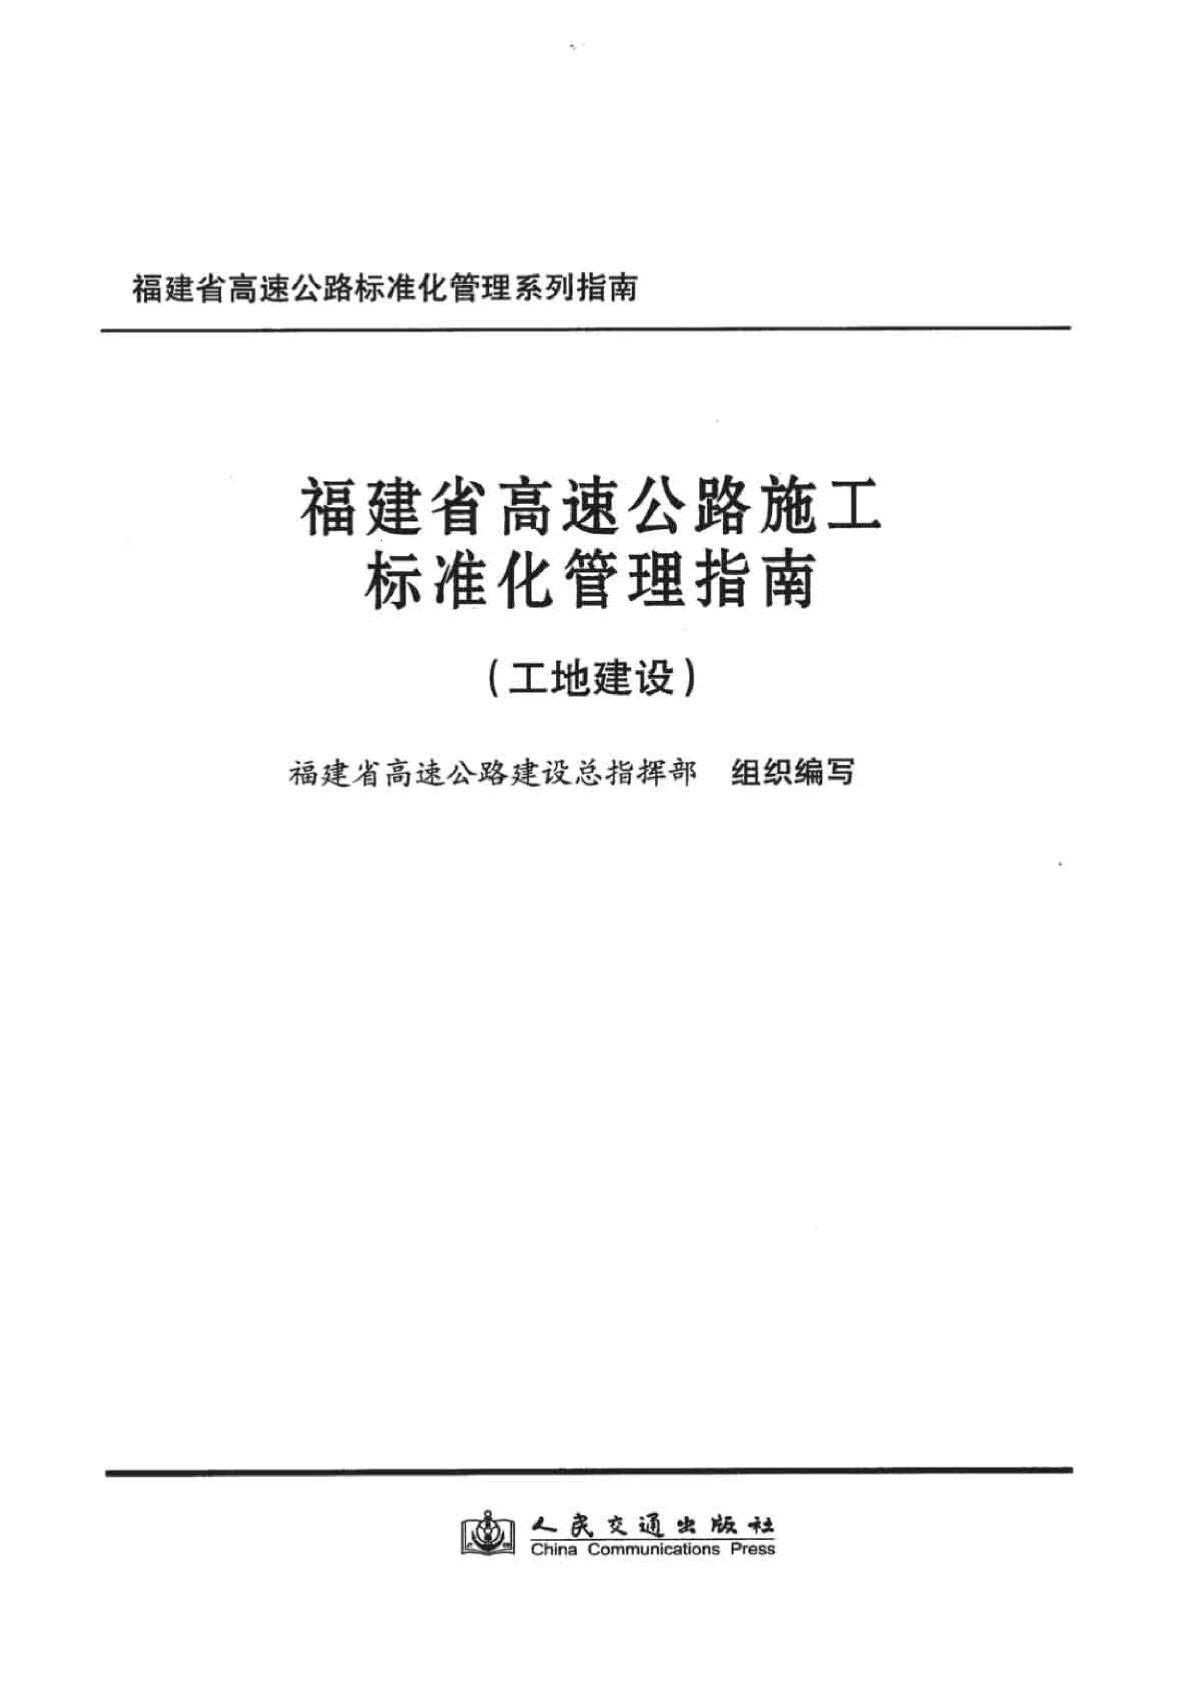 福建省高速公路施工标准化管理指南(工地建设)